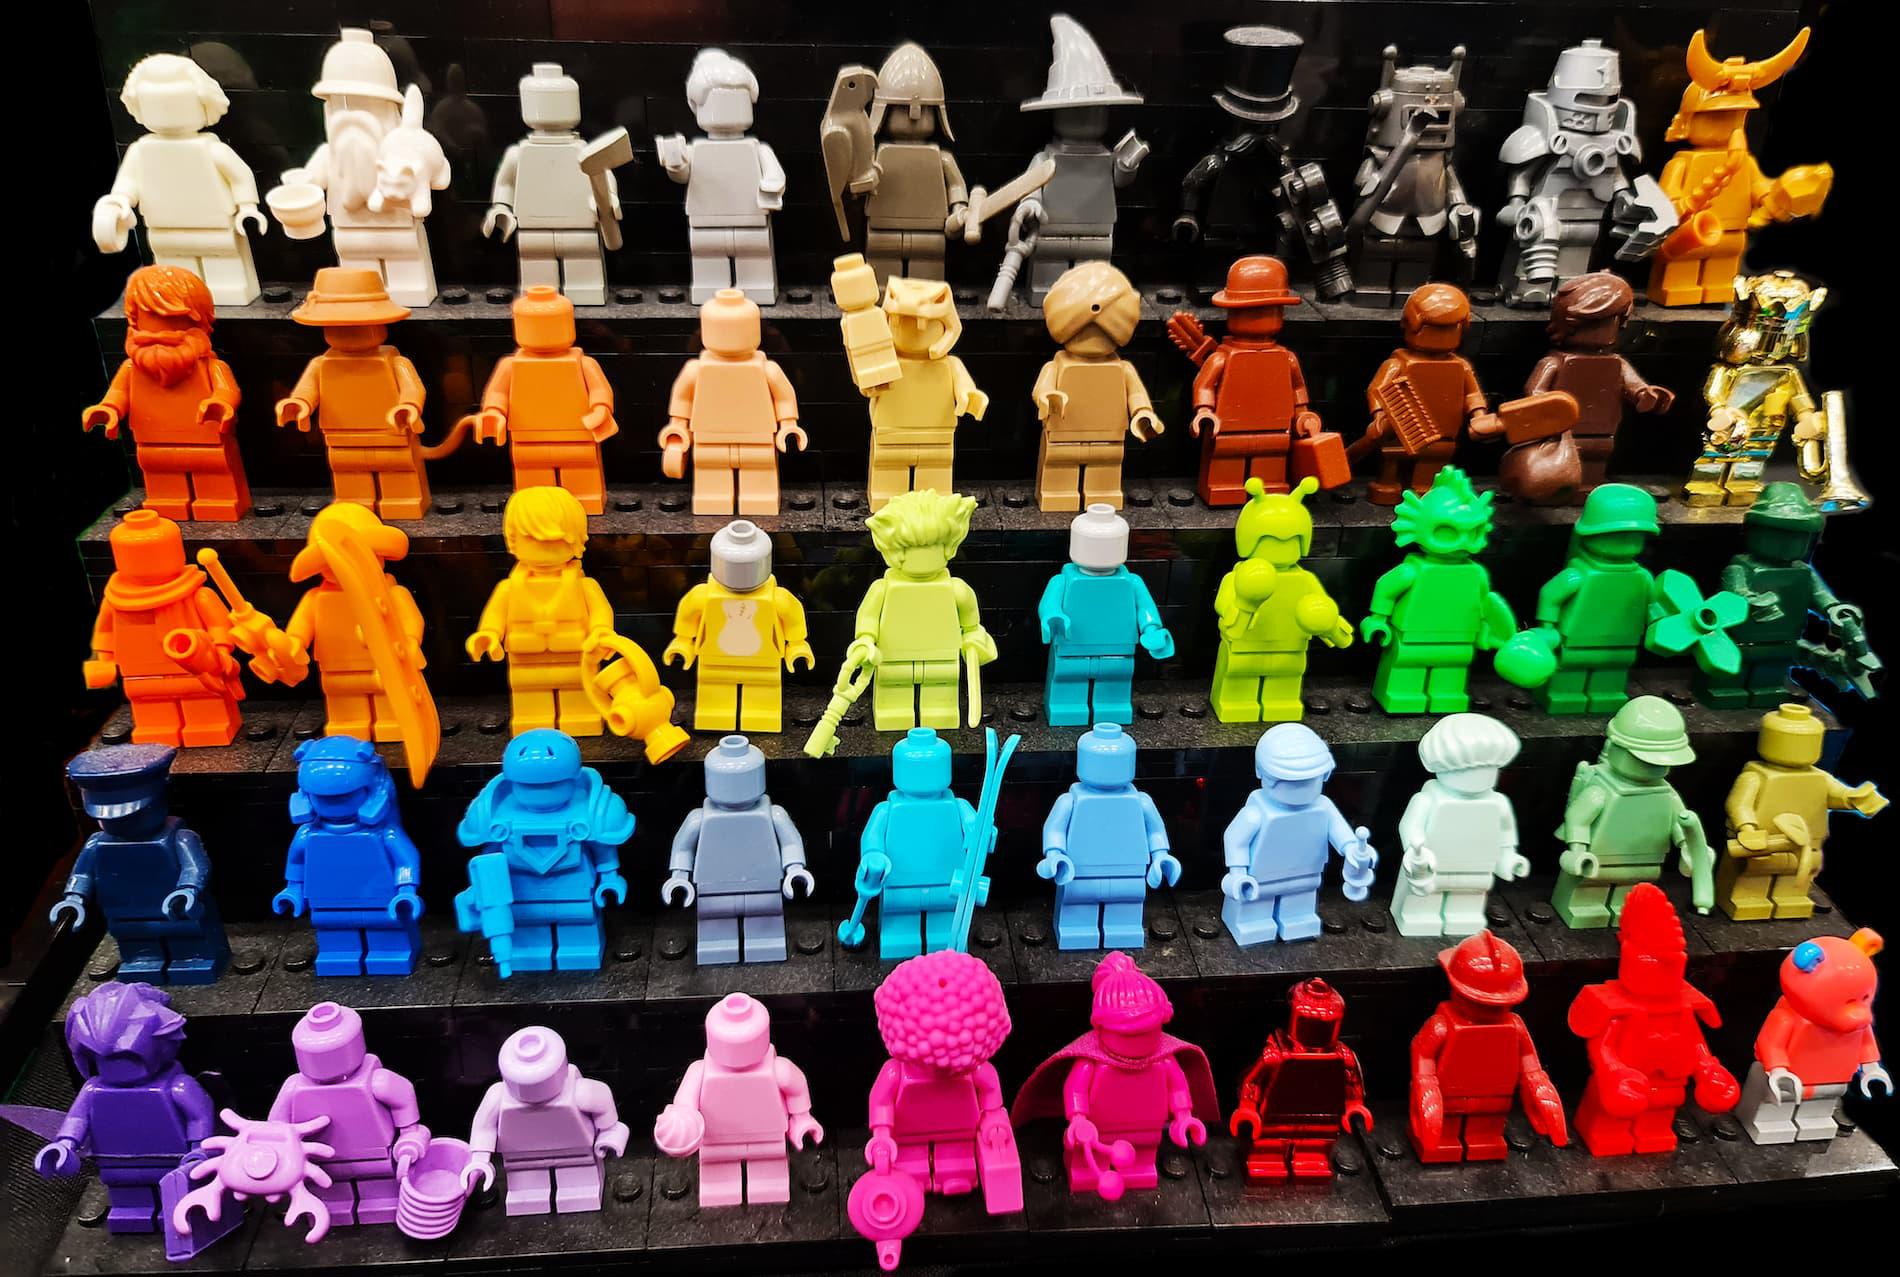 Colourful LEGO figures